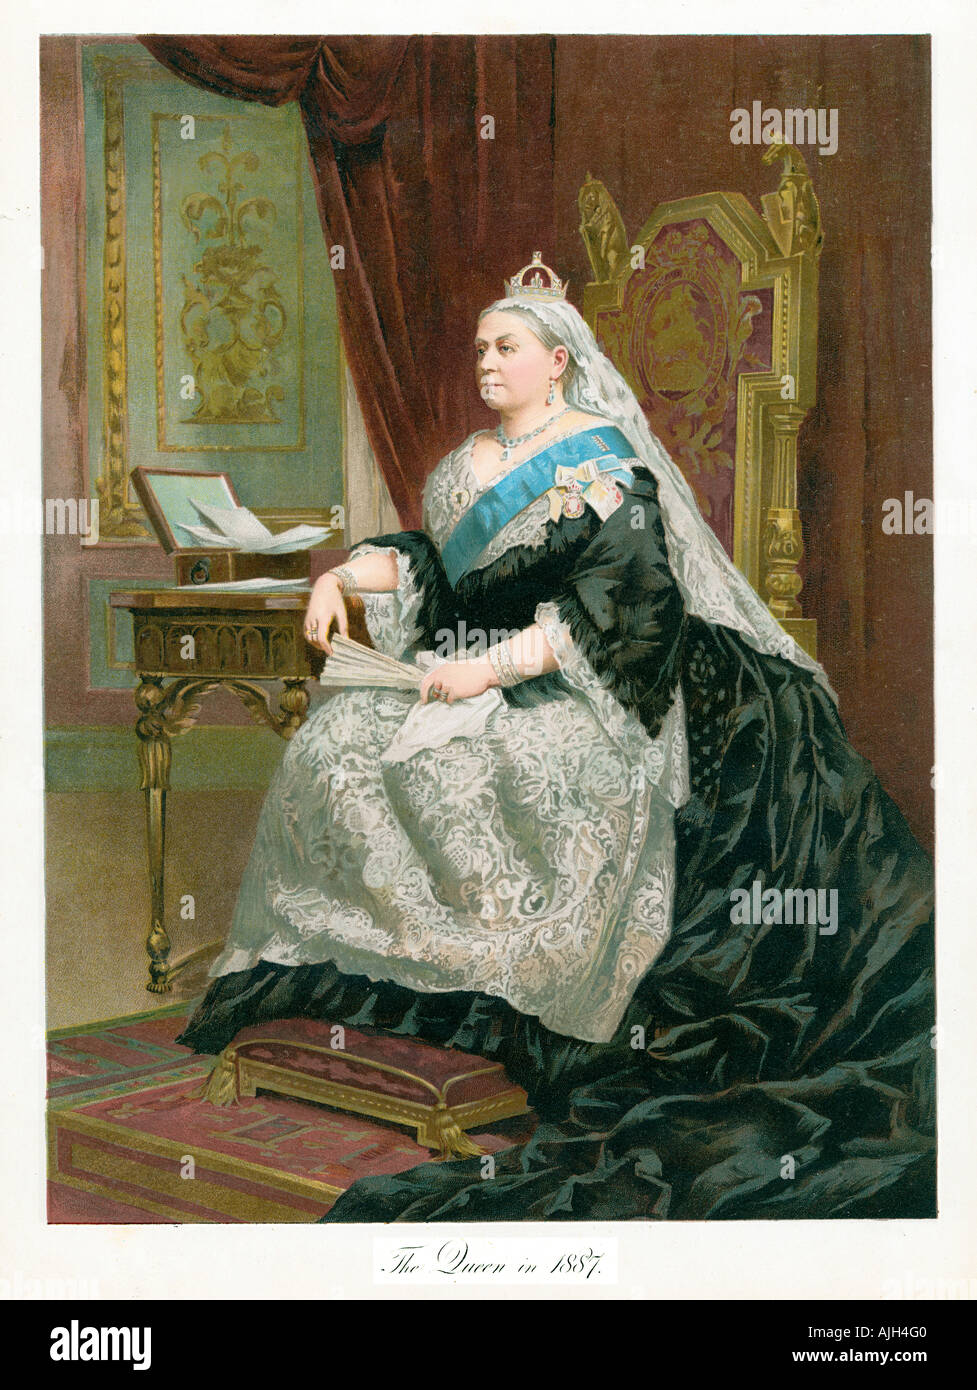 La reina Victoria en 1887, retrato de una publicación de recuerdo para conmemorar el jubileo de oro de la Reina Emperatriz Foto de stock